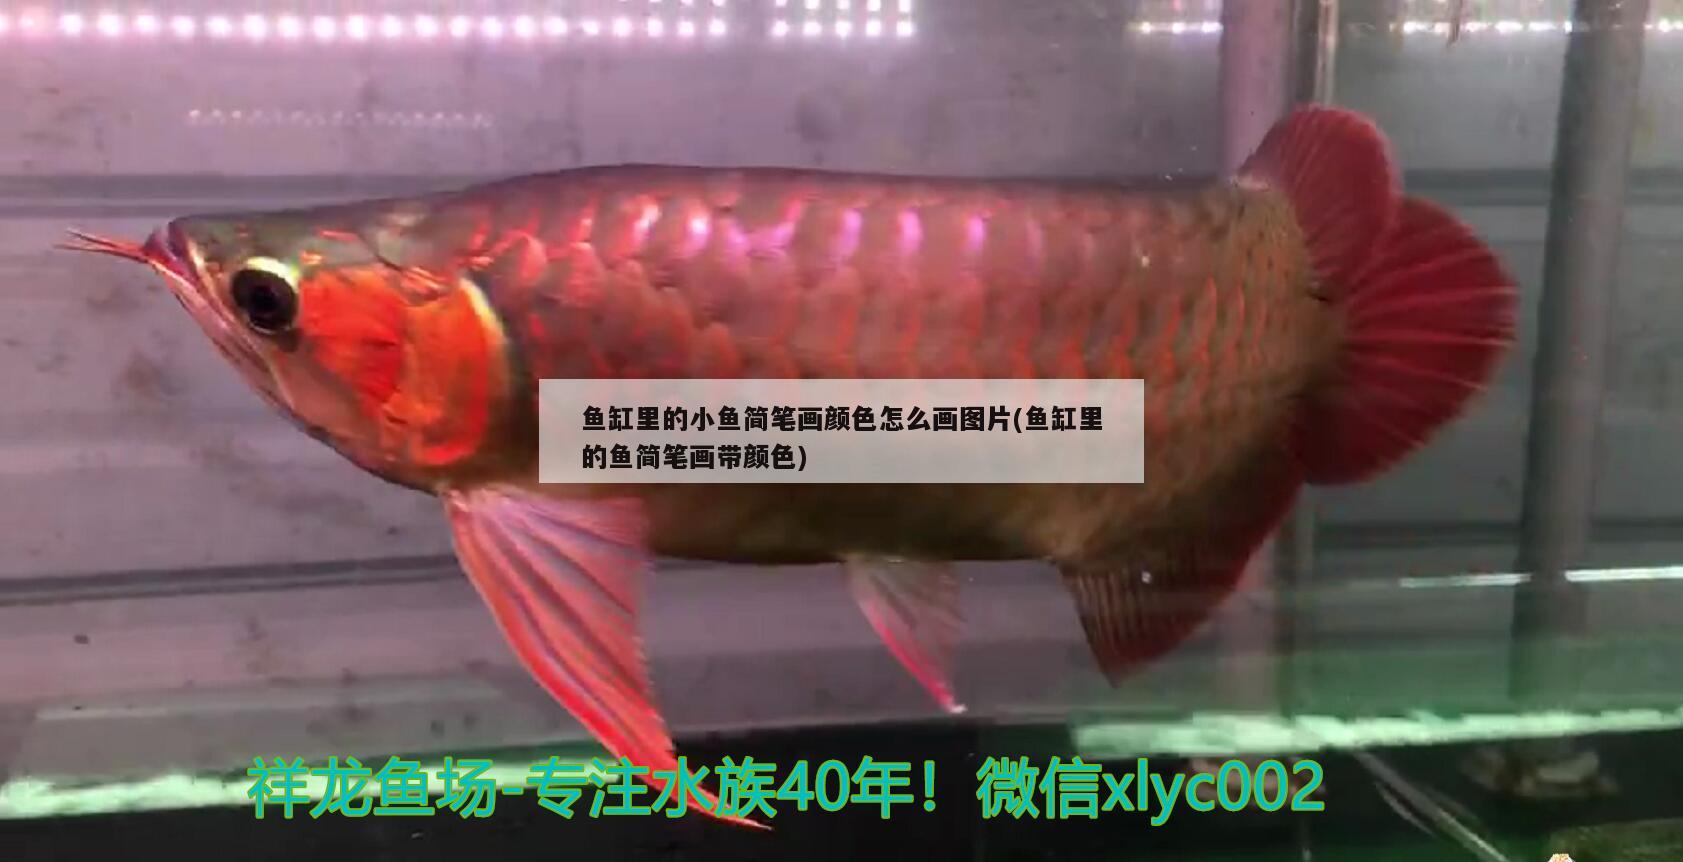 鱼缸里的小鱼简笔画颜色怎么画图片(鱼缸里的鱼简笔画带颜色) 金老虎鱼